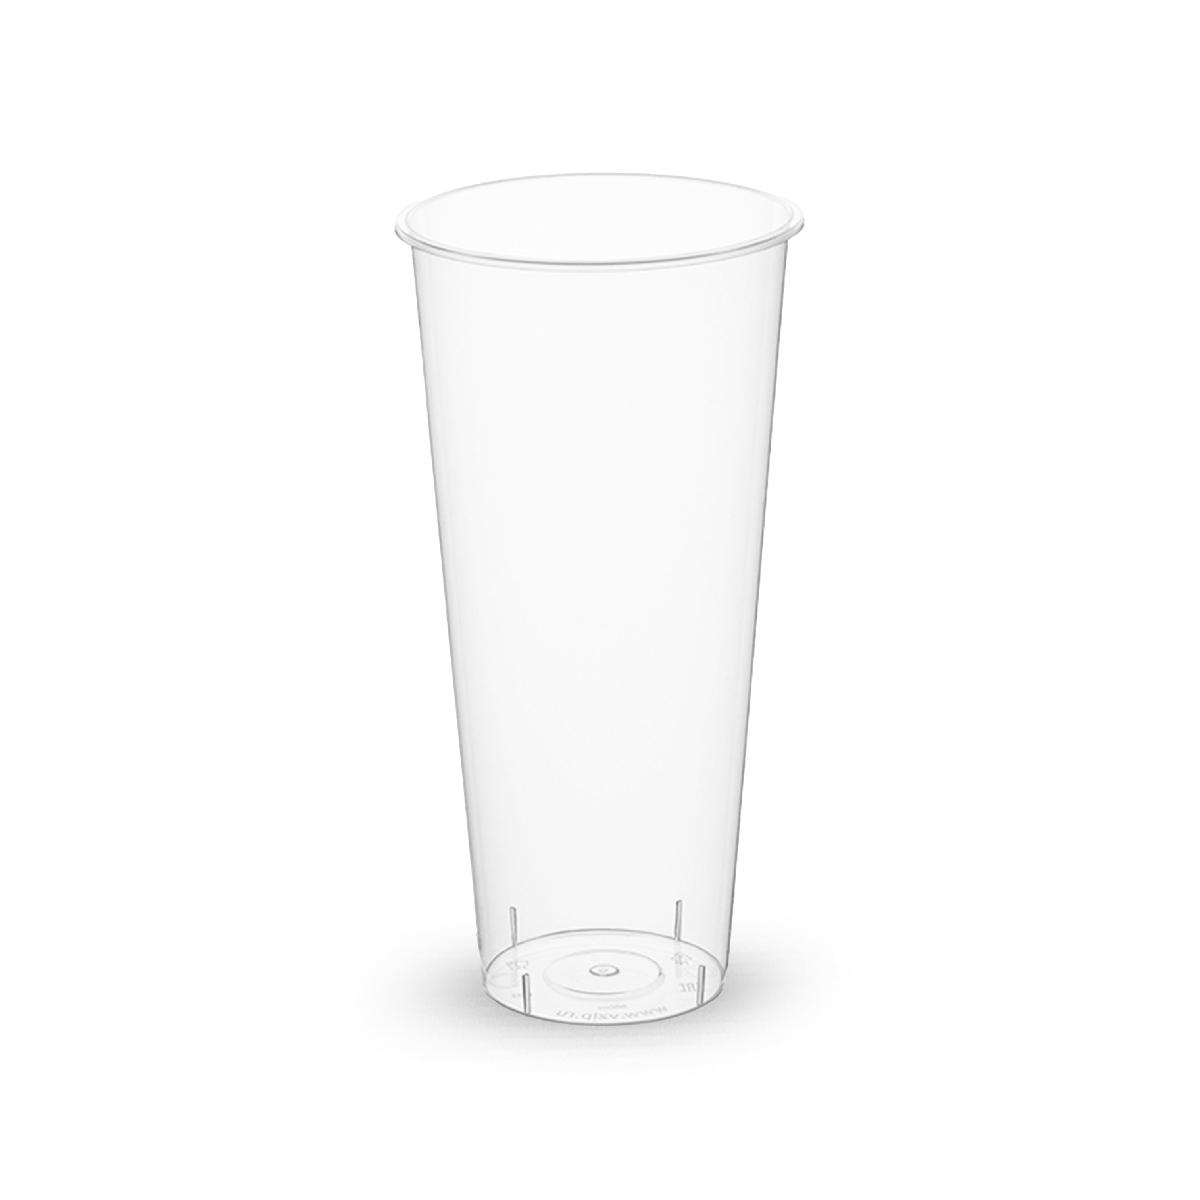 Стакан пластиковый 650мл d=90 Bubble Cup прозрачный глянцевый PP 1022 (25/500)